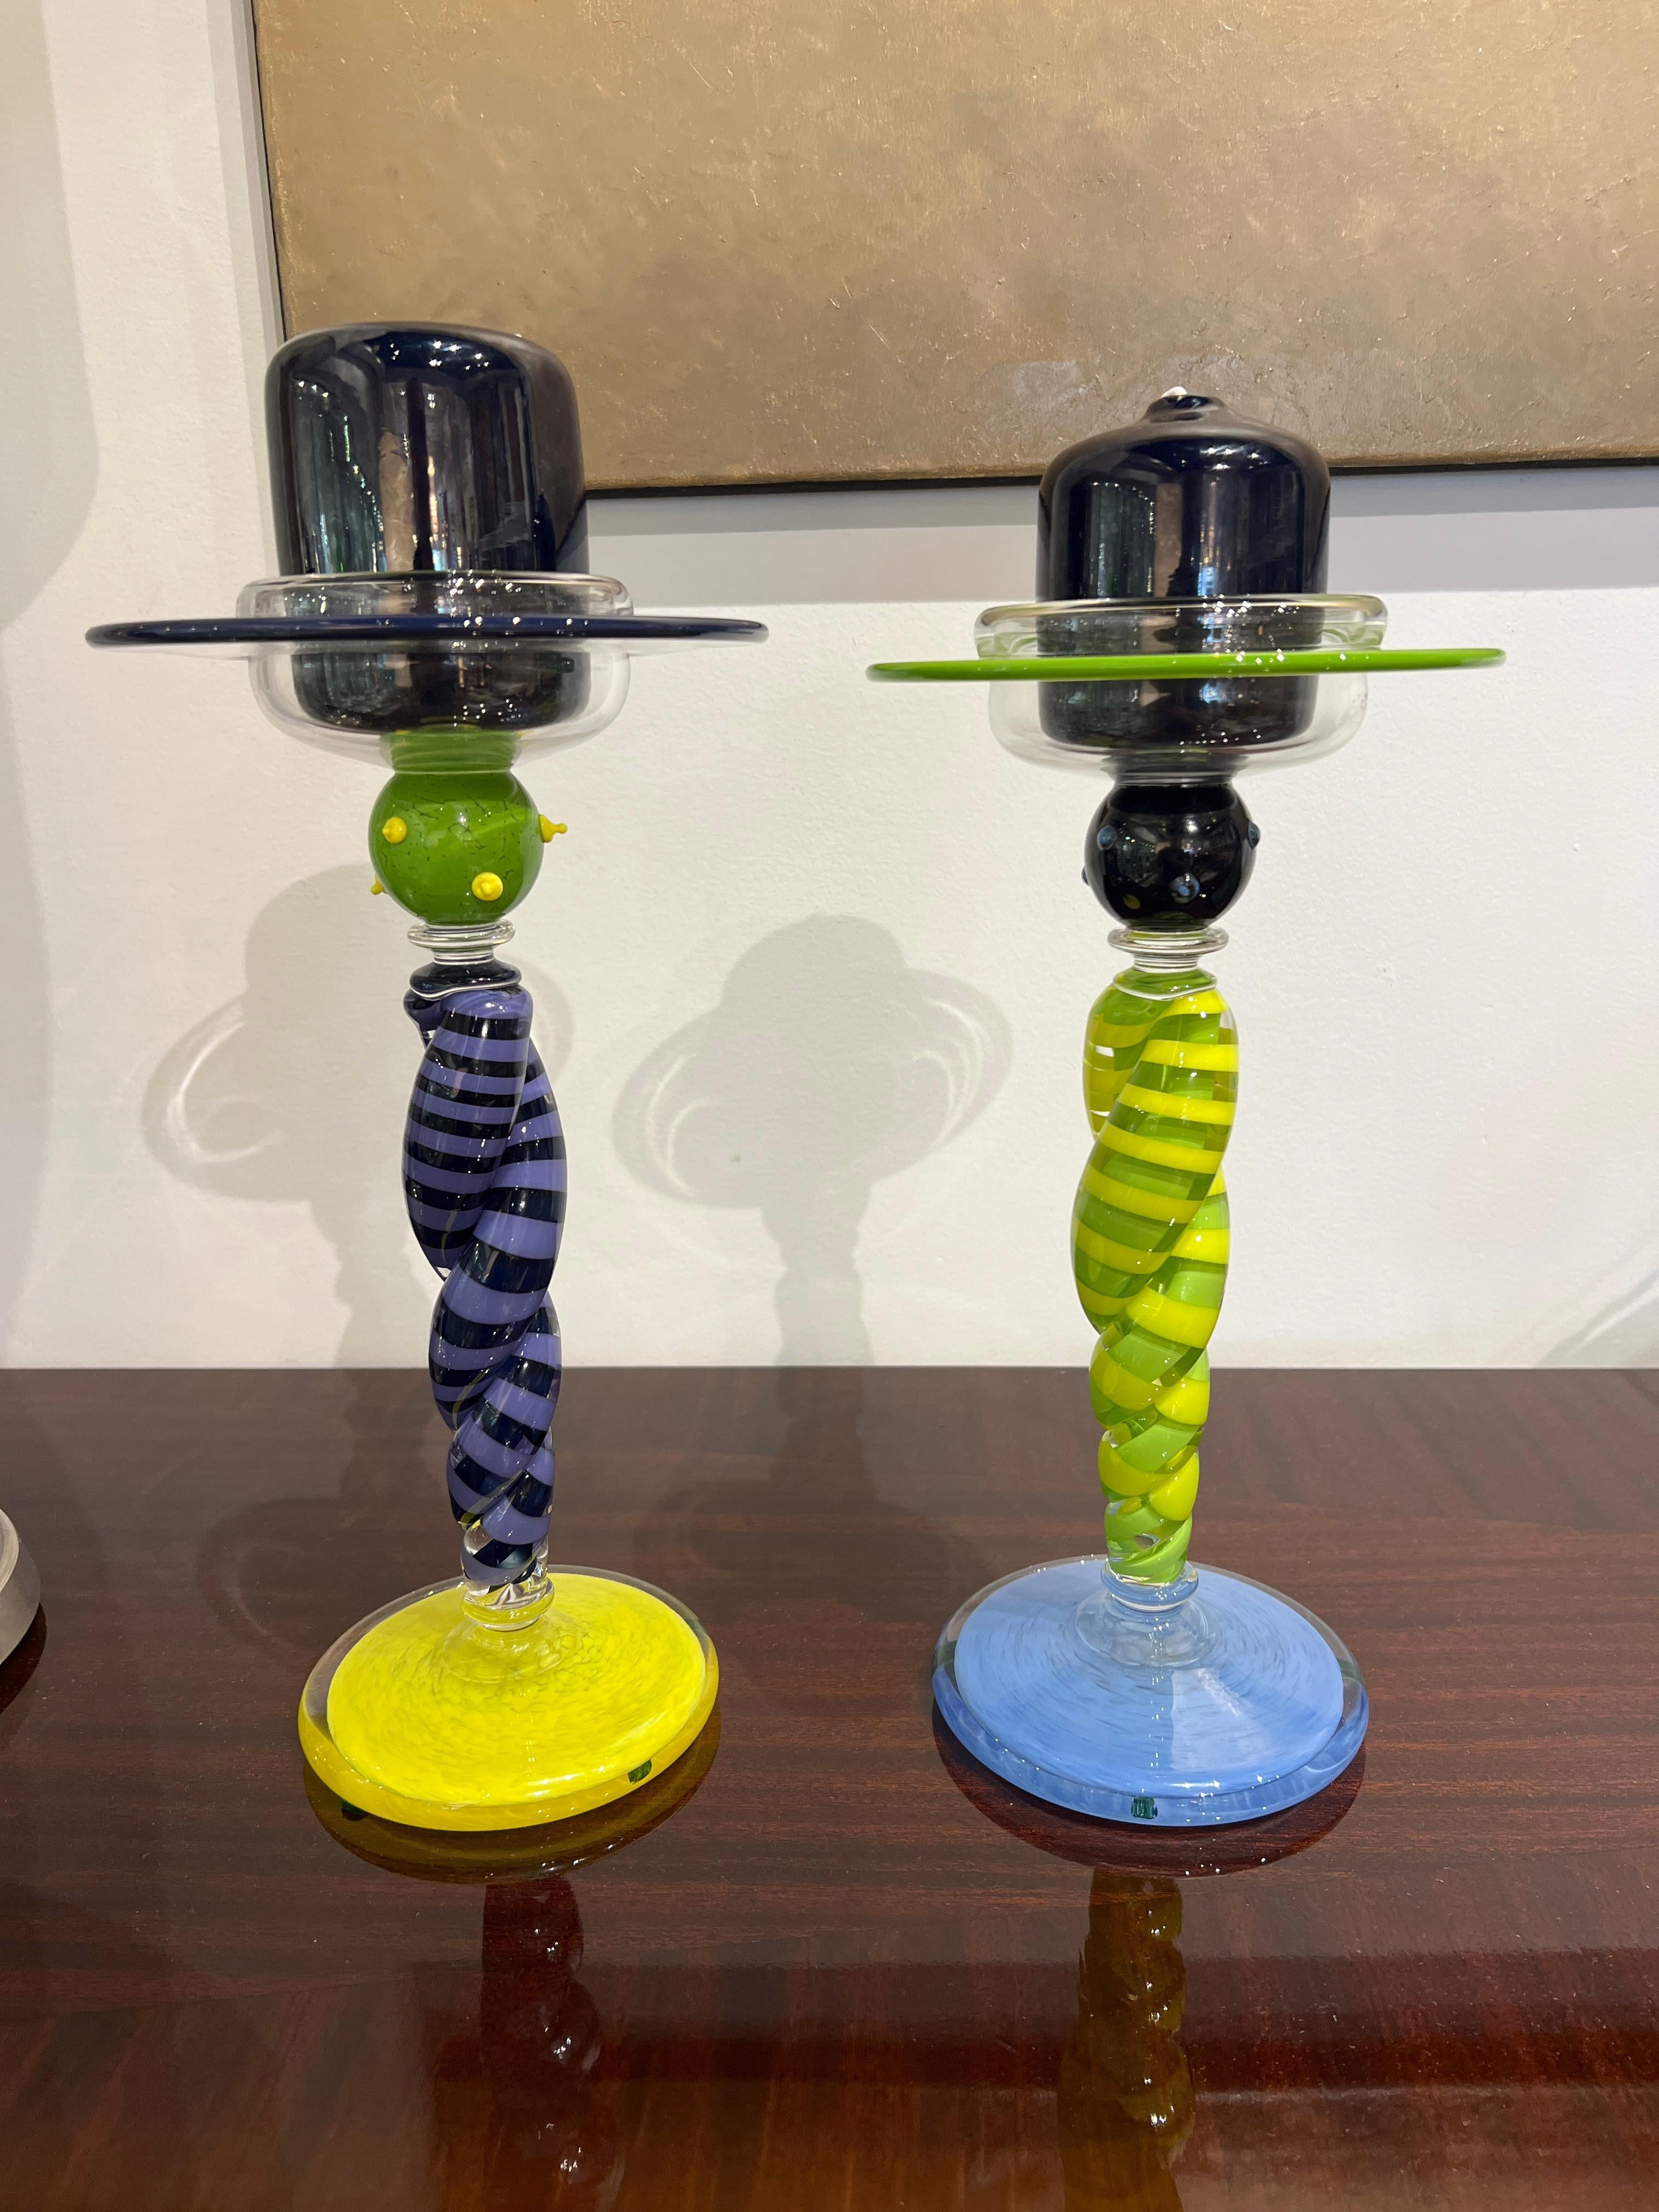 Paire de chandeliers contemporains en verre aux couleurs vives de l'arbre (violet, bleu, vert et jaune) et du pied jaune.  Le pilier de bougie en verre est de couleur noire.

Signature : Cray